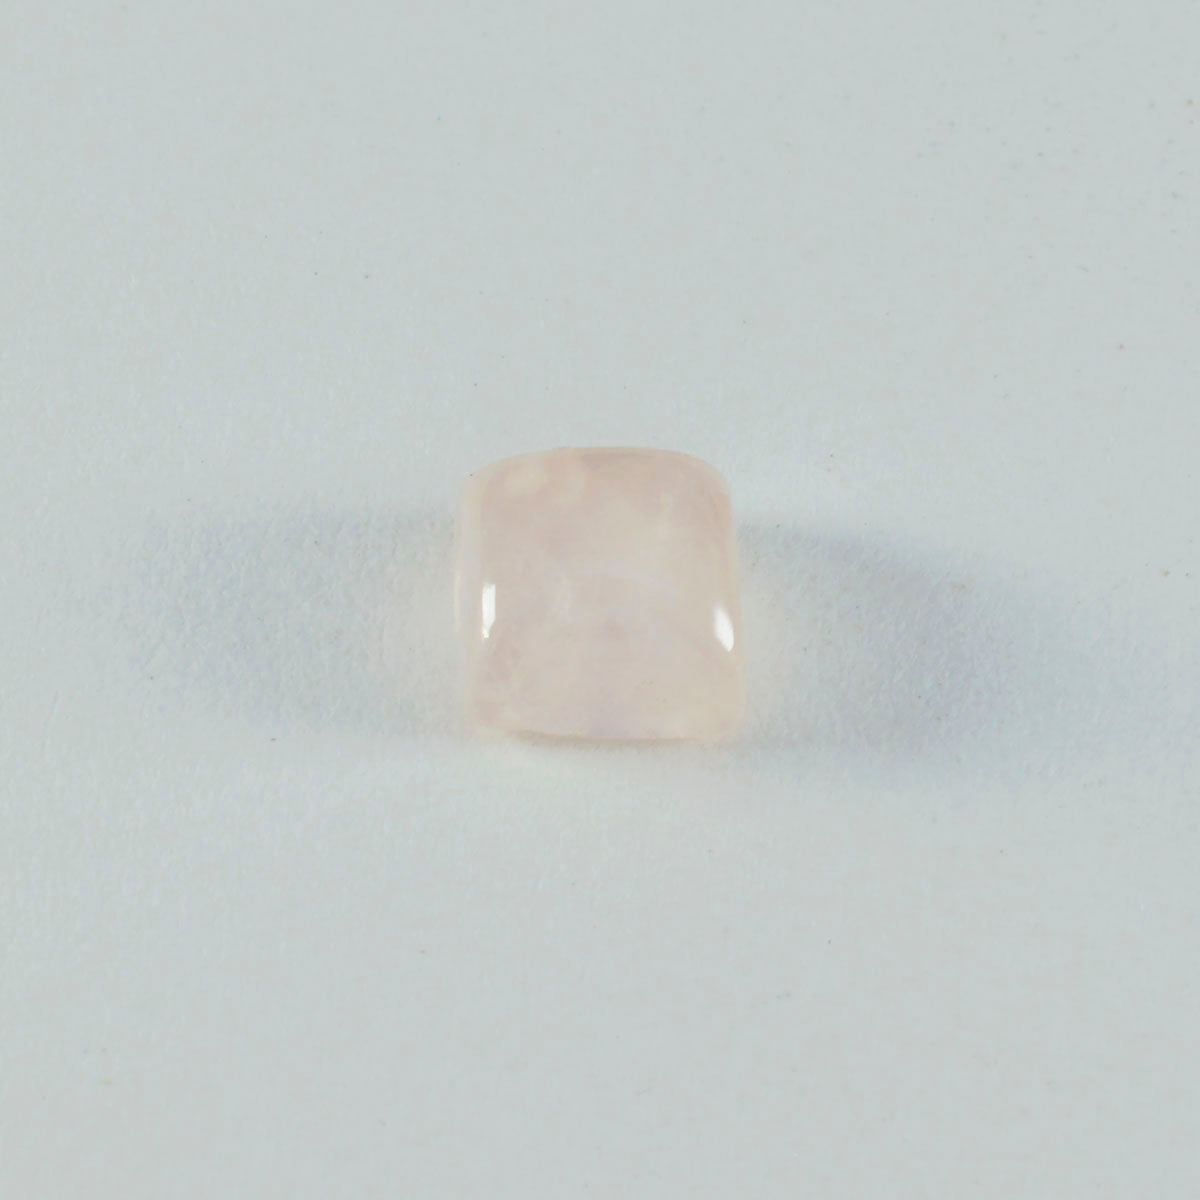 riyogems 1 шт. кабошон из розового кварца 15x15 мм квадратной формы, красивый качественный камень